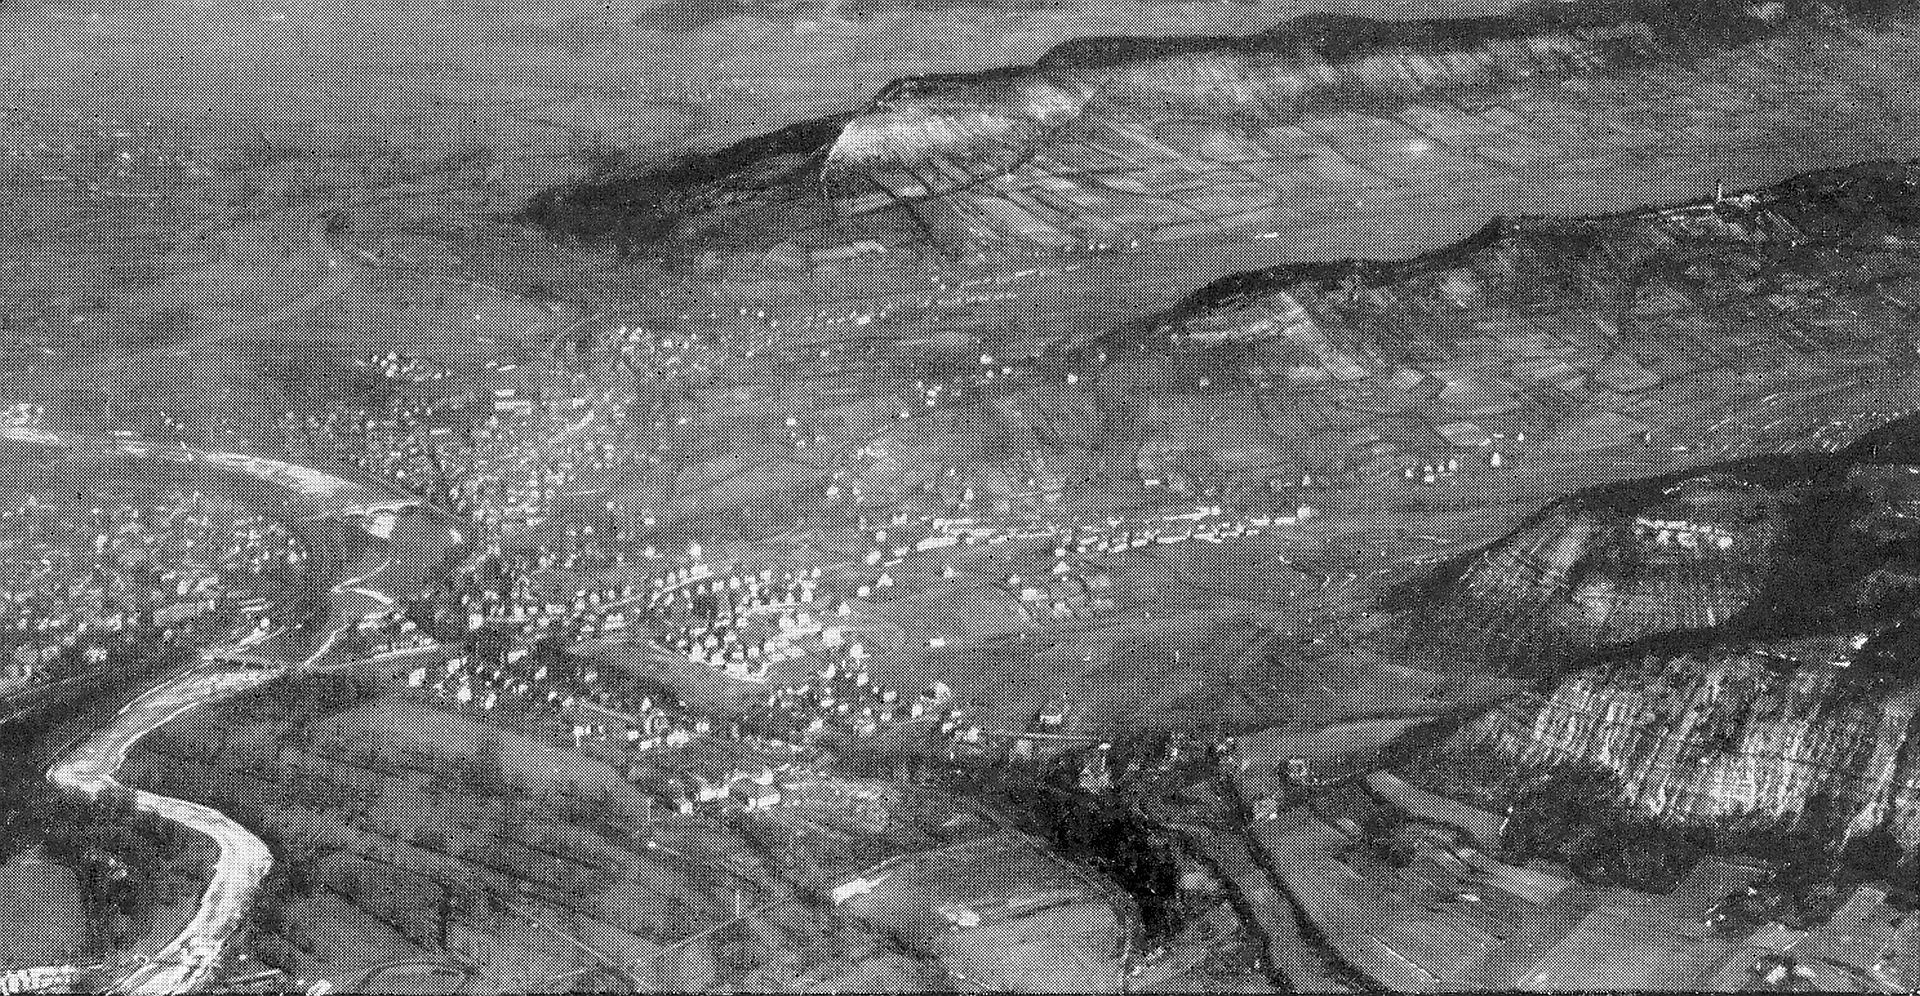 Ballonaufnahme ca. 1930 von Südwest aufgenommen